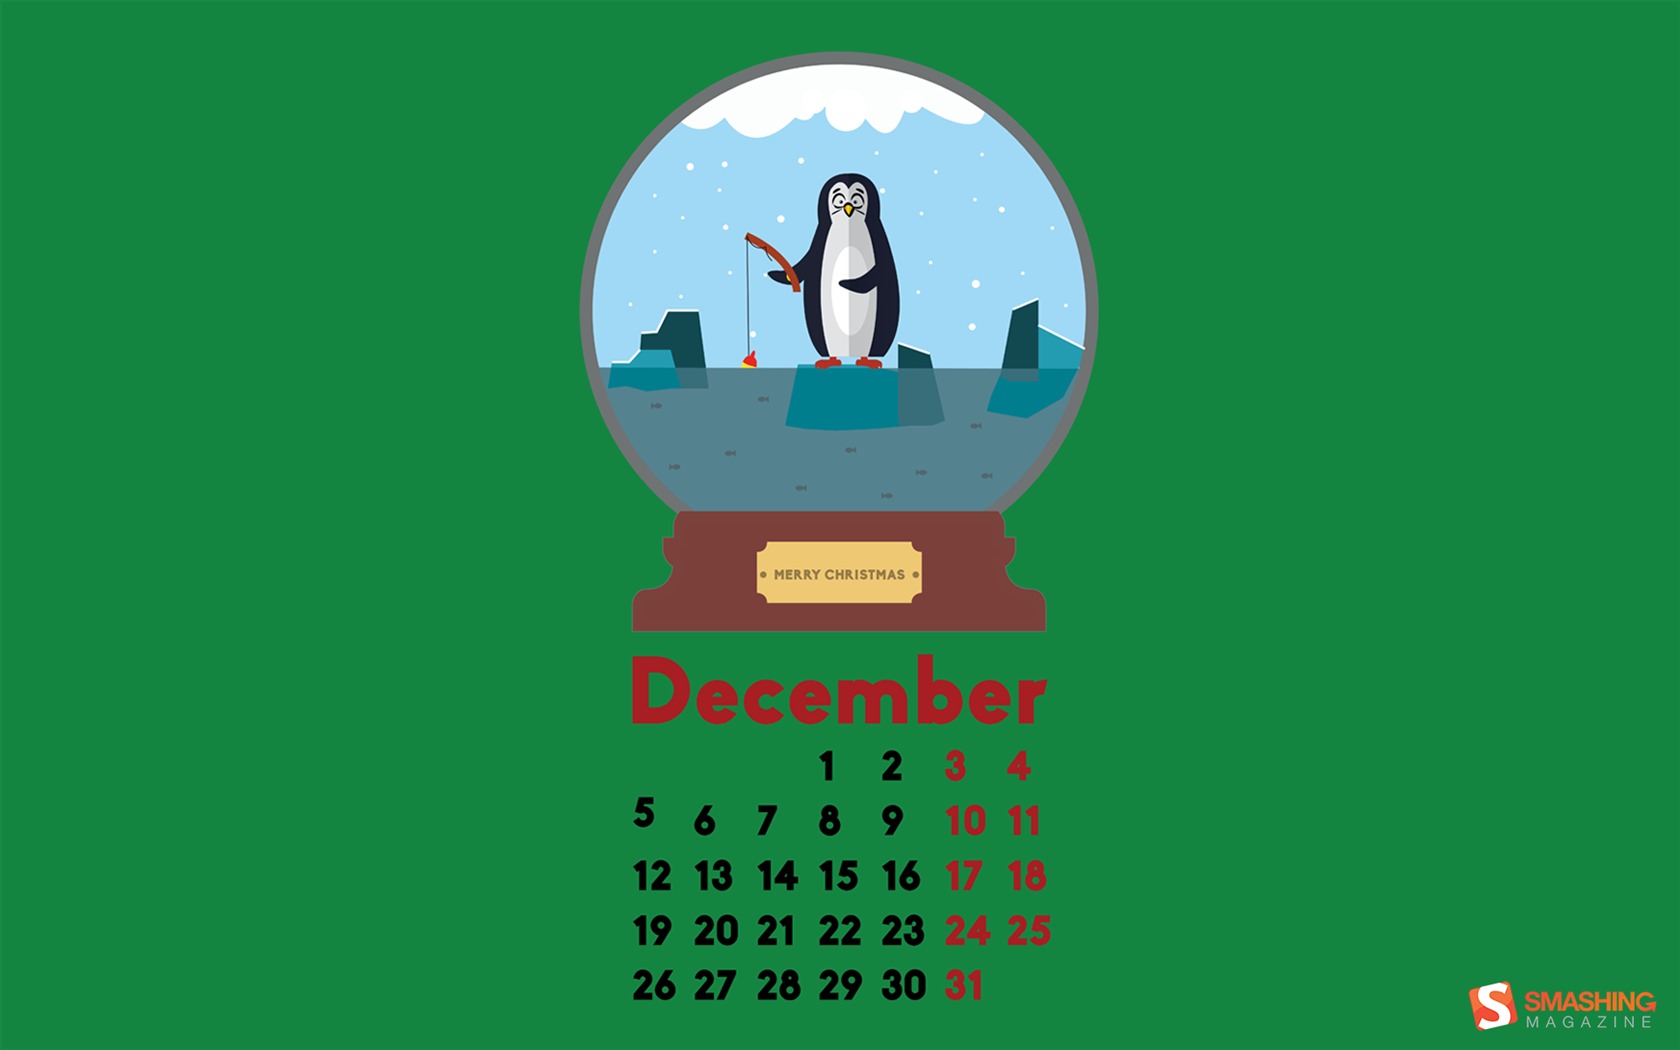 December 2016 Christmas theme calendar wallpaper (2) #8 - 1680x1050